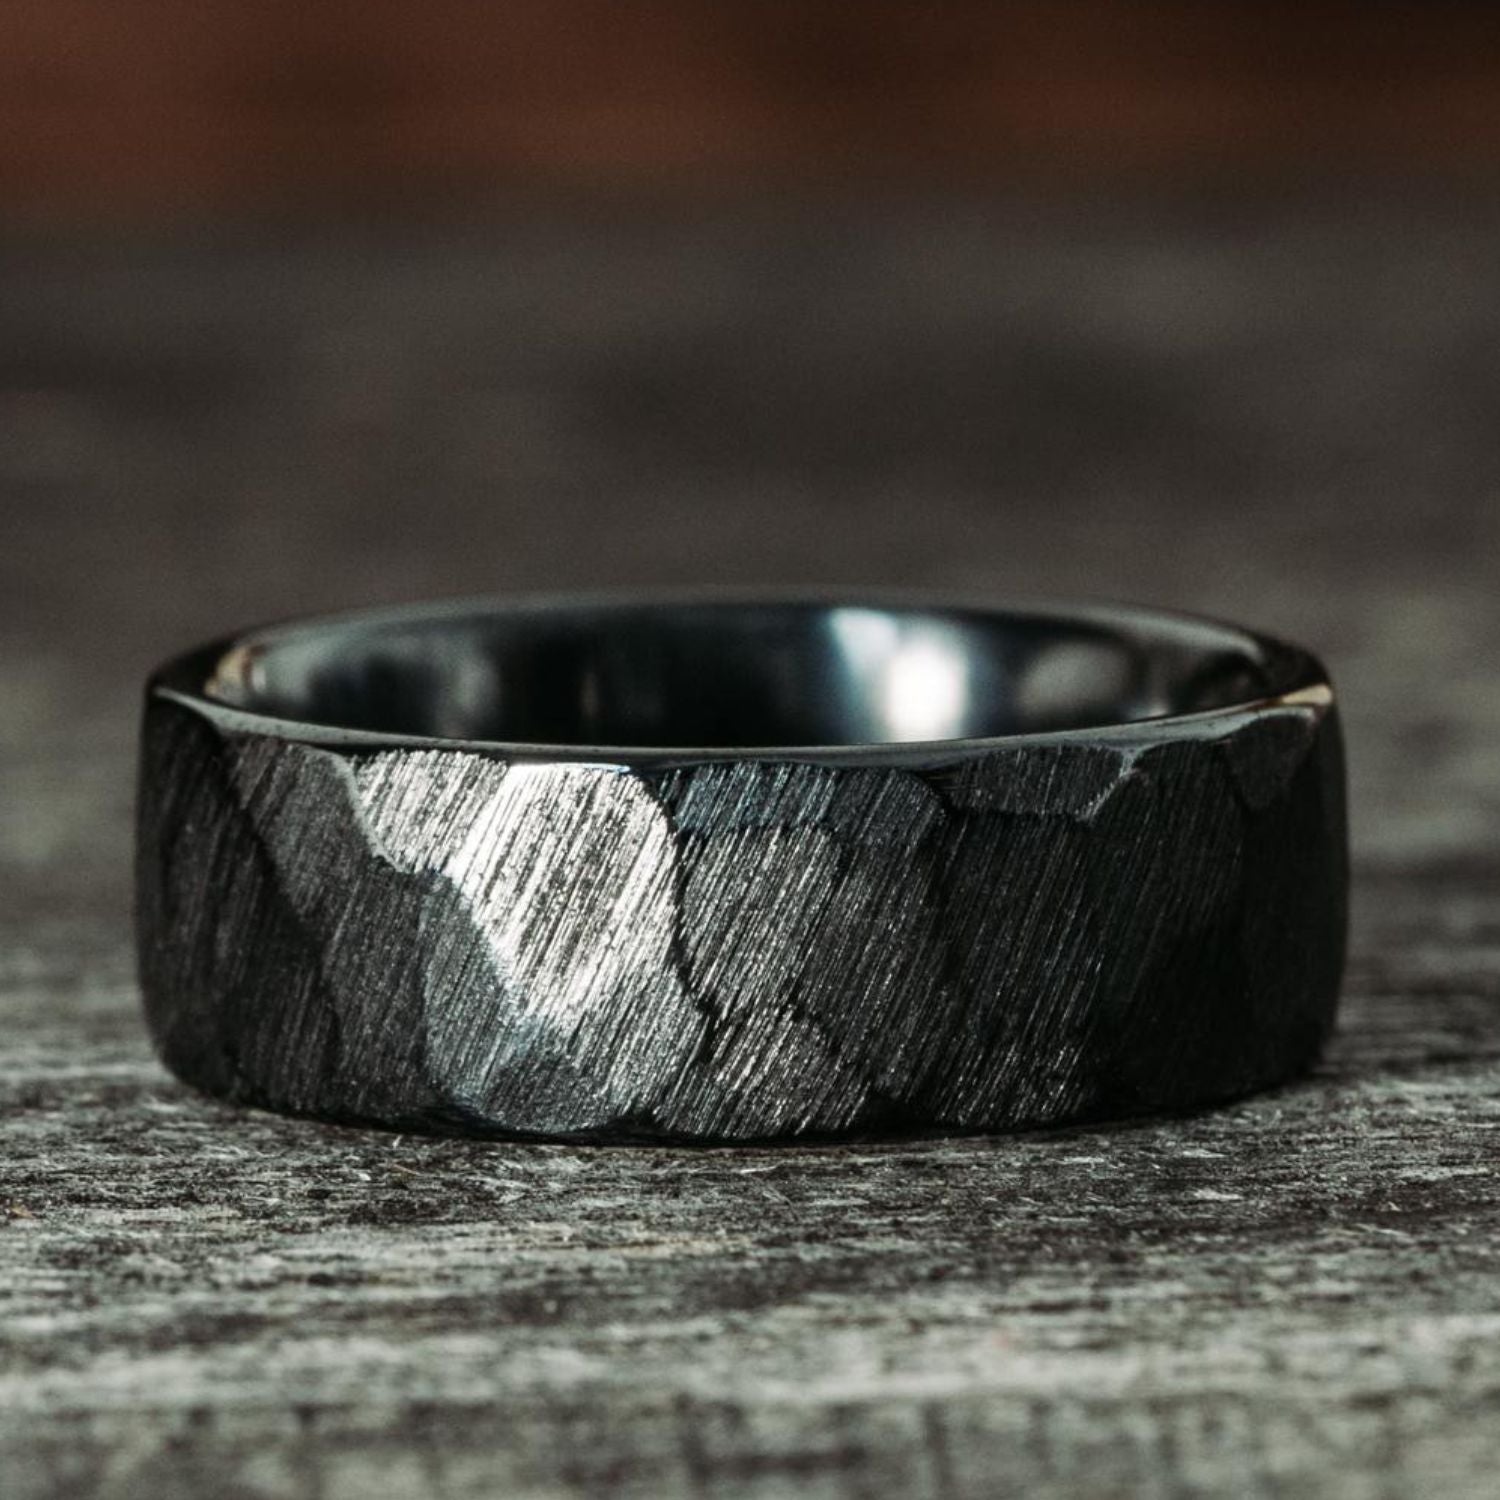 Men's Promise Rings - I'll Be There Engraved 8mm Black Titanium Ring |  Promise rings for guys, Titanium rings for men, Rings for men